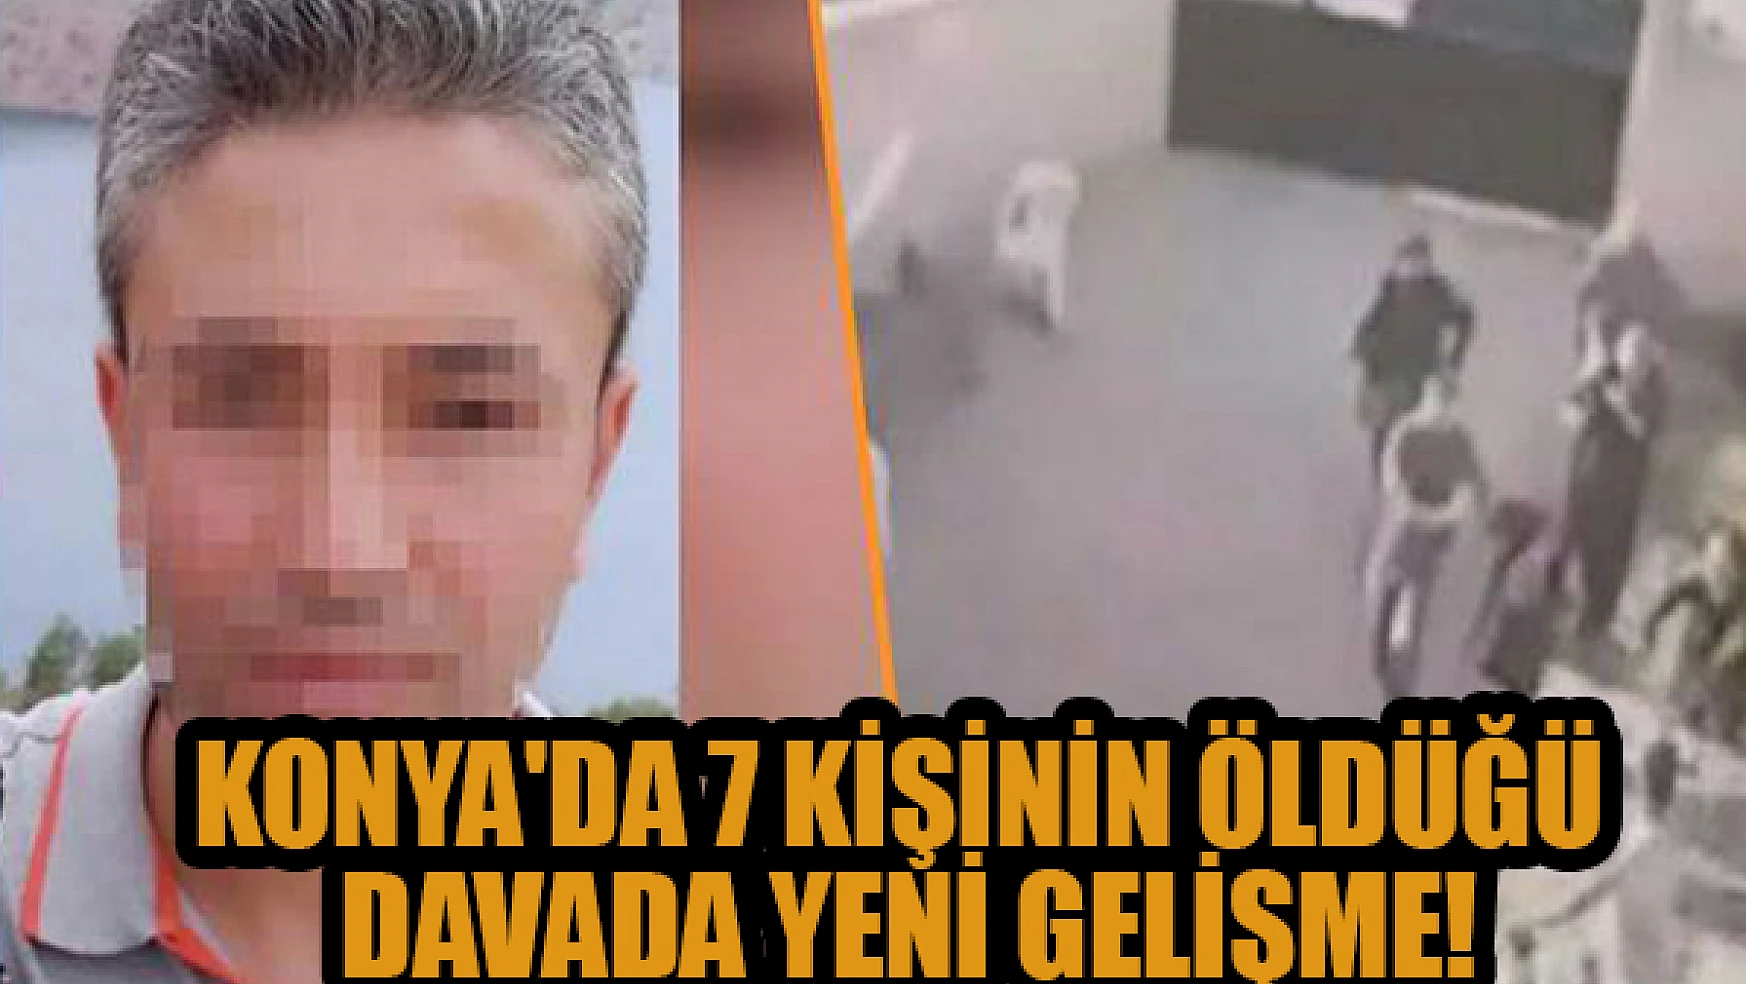 Konya'da 7 kişinin öldüğü davada yeni gelişme!